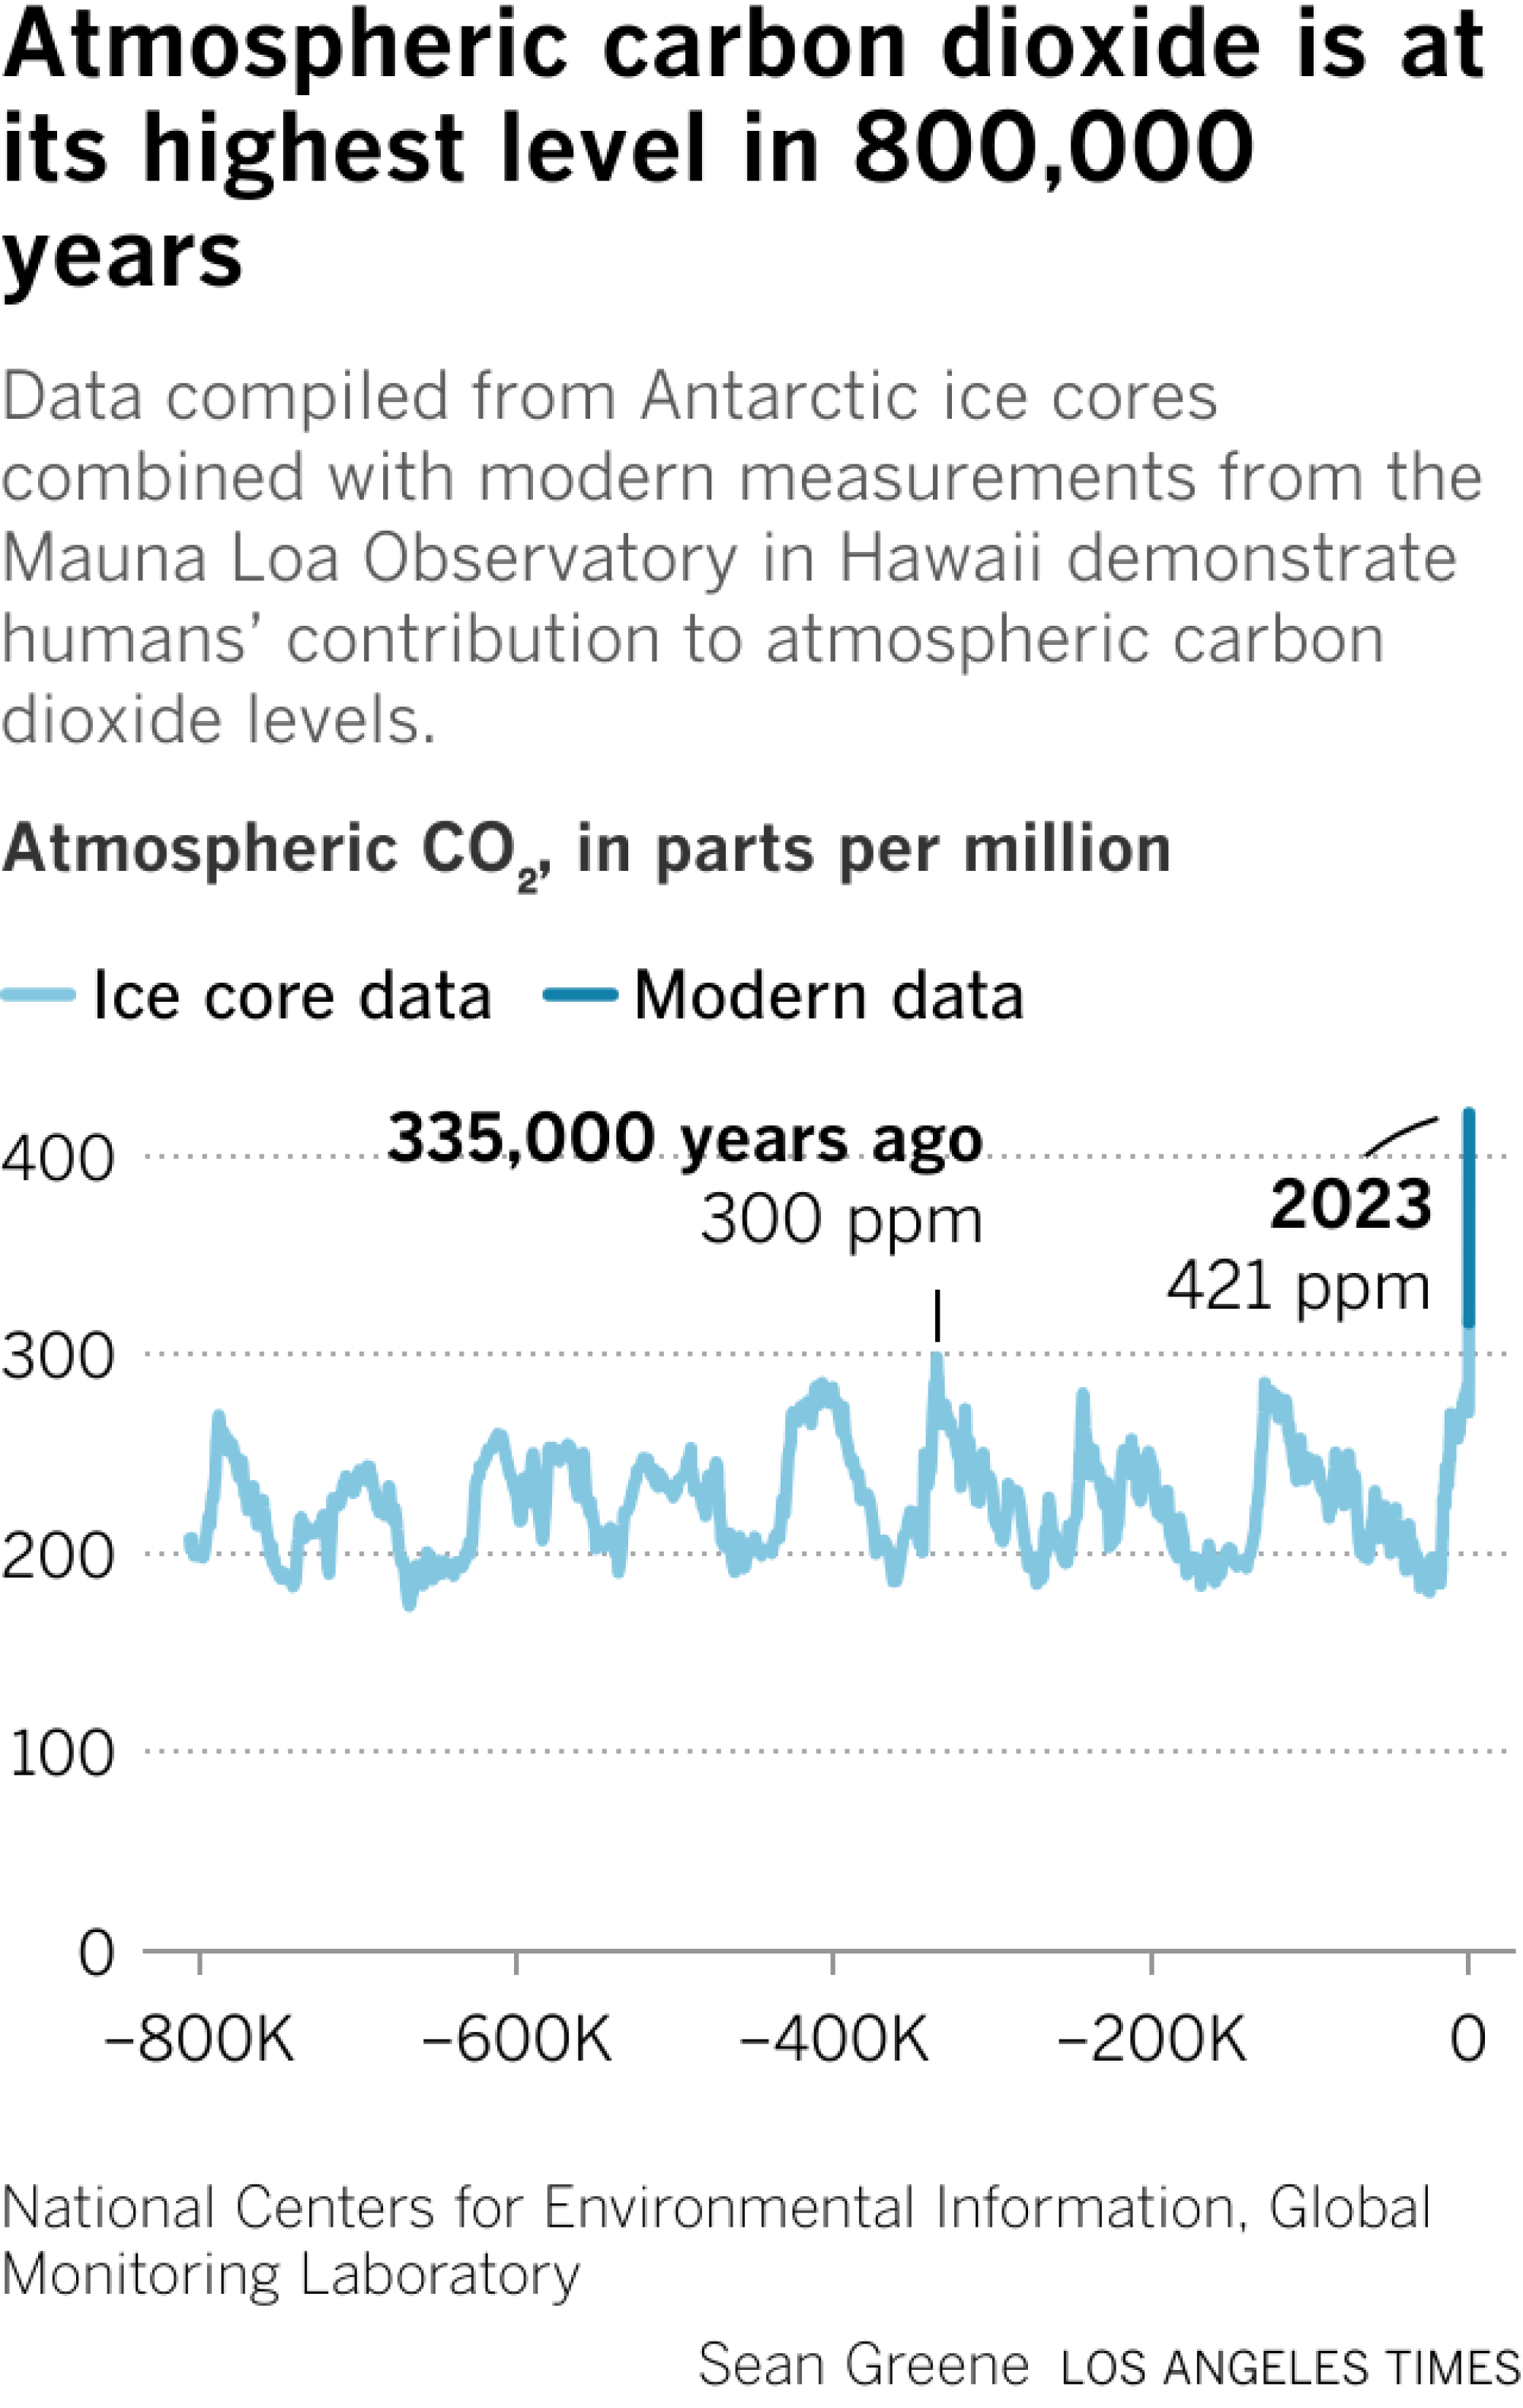 Un gráfico de líneas muestra los niveles de dióxido de carbono atmosférico durante los últimos 800.000 años.  La última vez que el CO2 alcanzó su punto máximo fue hace 335.000 años, con 300 partes por millón.  En las últimas décadas, la concentración se ha disparado hasta 421 partes por millón.